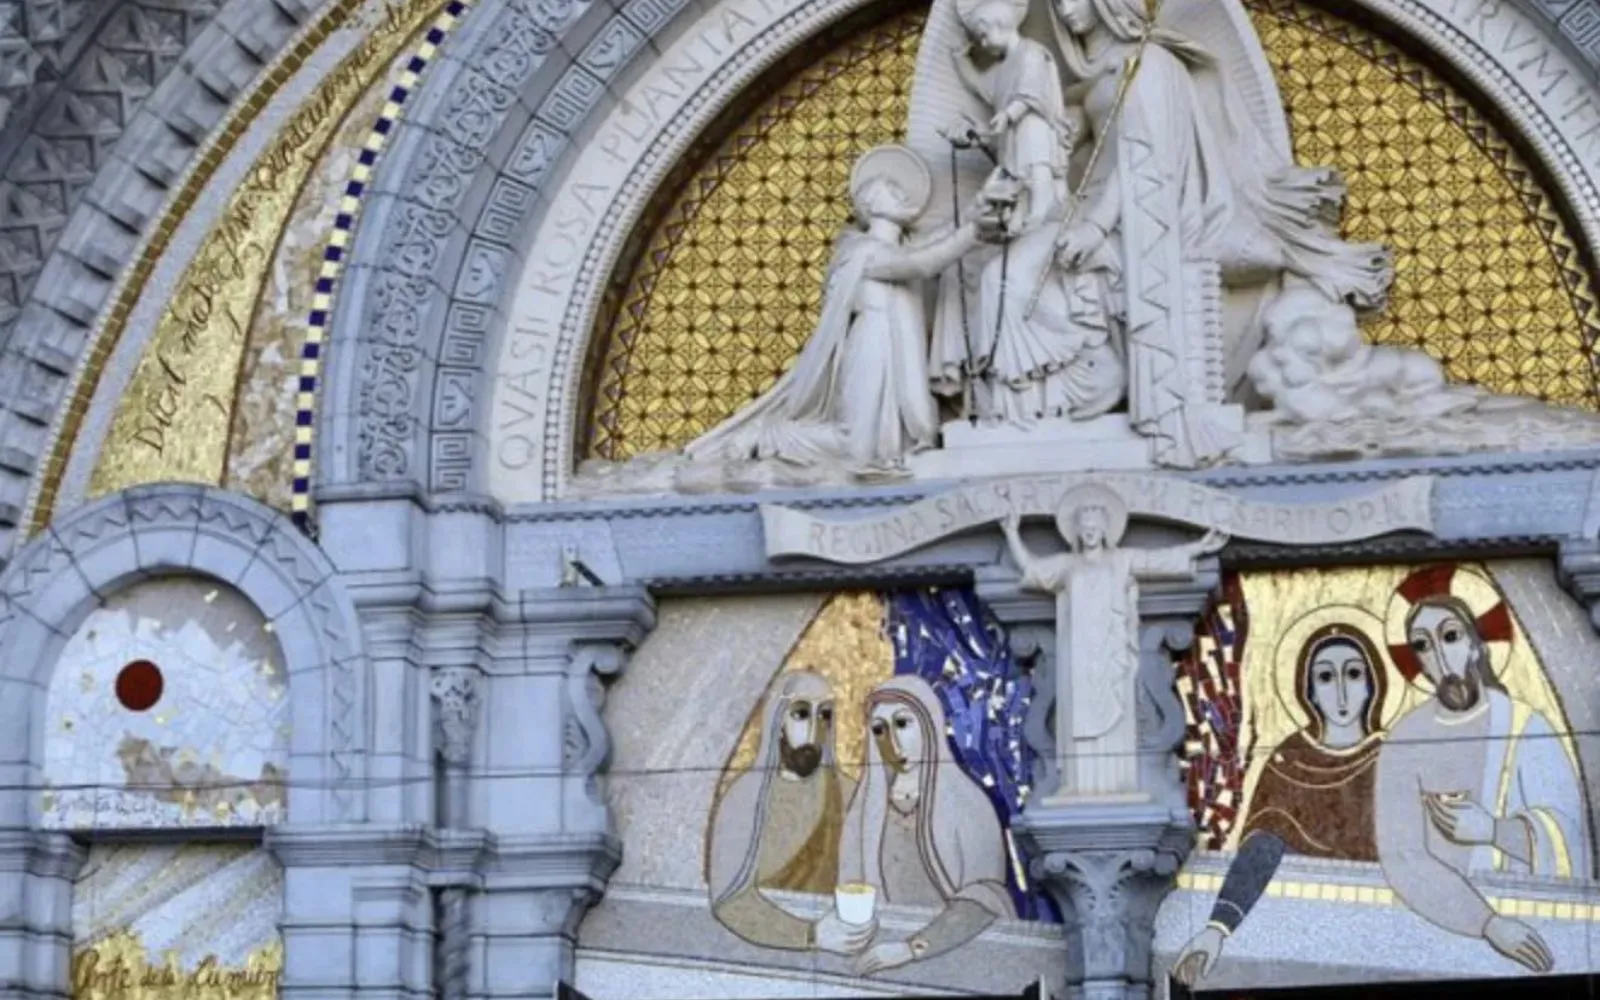 Mosaicos del P. Marko Rupnik, acusado de abusos sexuales, se exhiben en el Santuario de Lourdes, Francia.?w=200&h=150